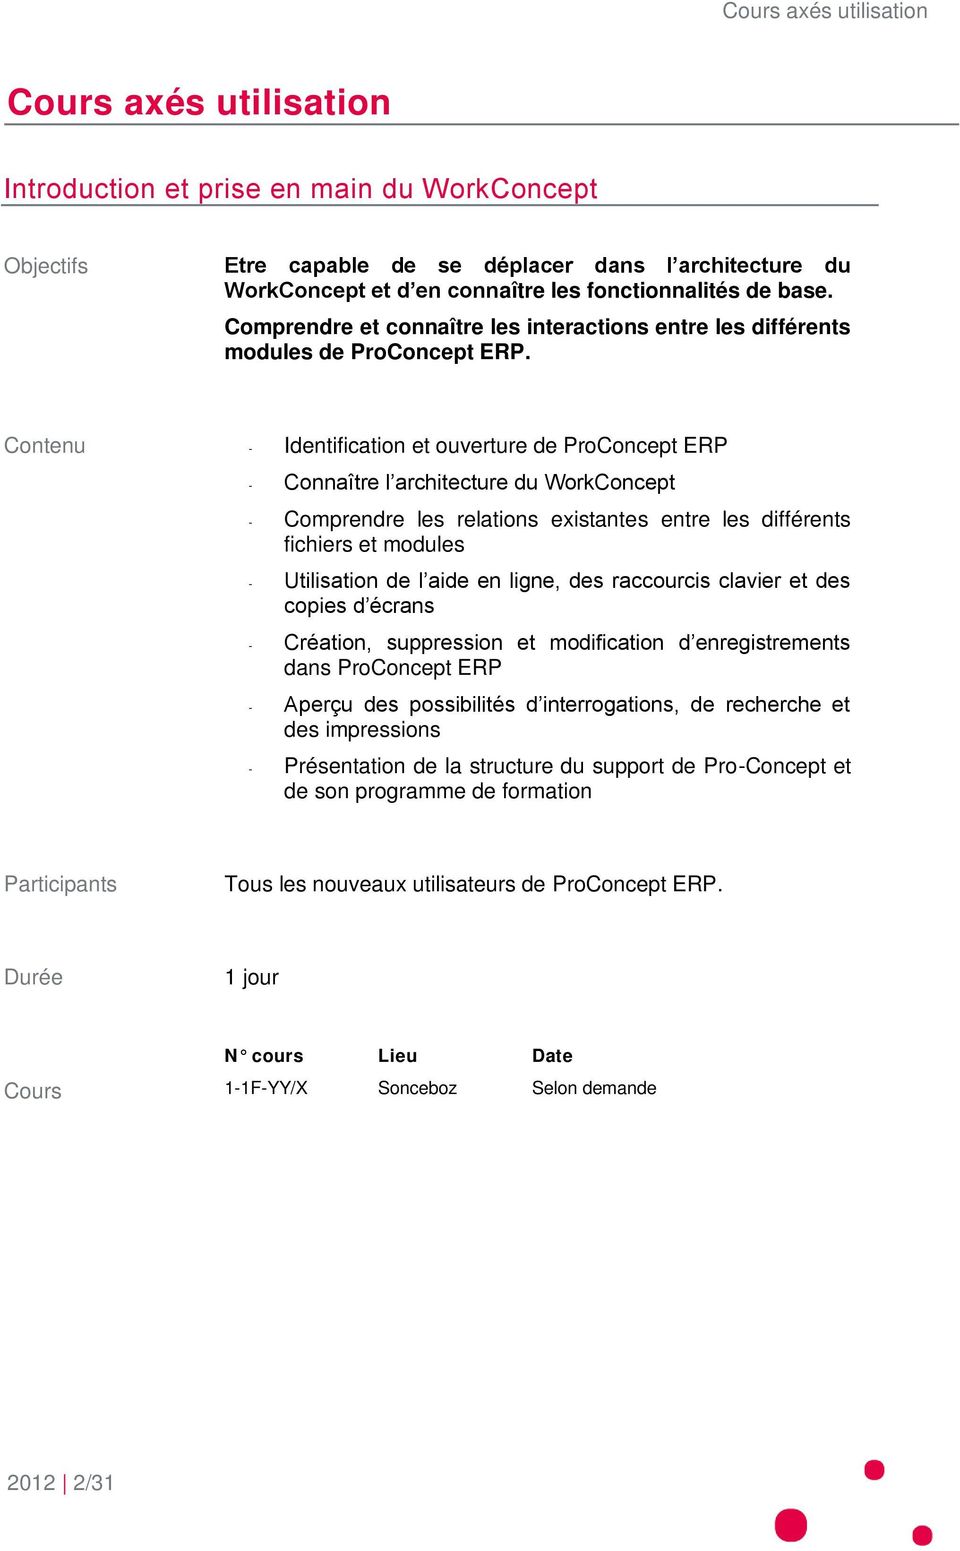 Contenu - Identification et ouverture de ProConcept ERP - Connaître l architecture du WorkConcept - Comprendre les relations existantes entre les différents fichiers et modules - Utilisation de l